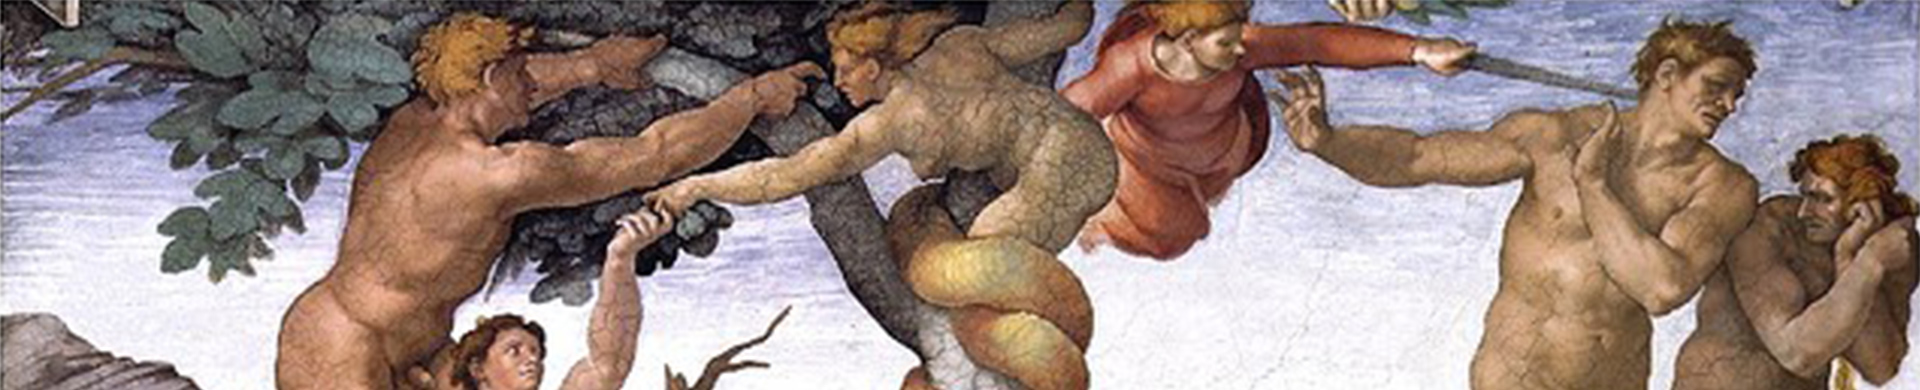 נחש בעל ראש אישה מפתה את אדם וחוה בגן העדן, מיניאטורה מכתב יד של "ספר השעות" מרואן, צרפת (1499)